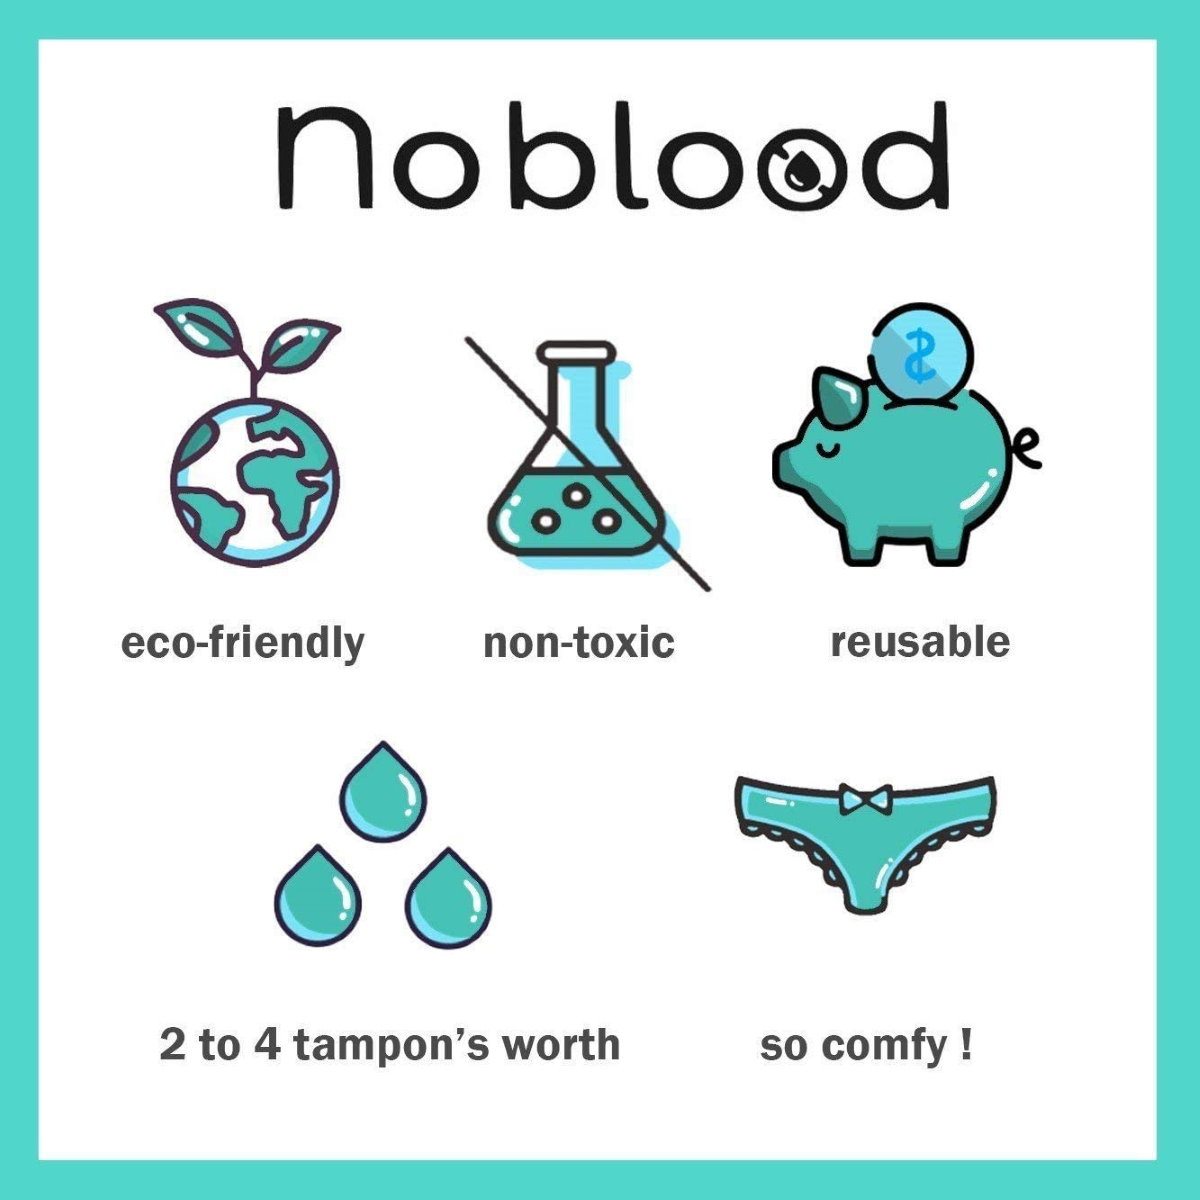 noblood